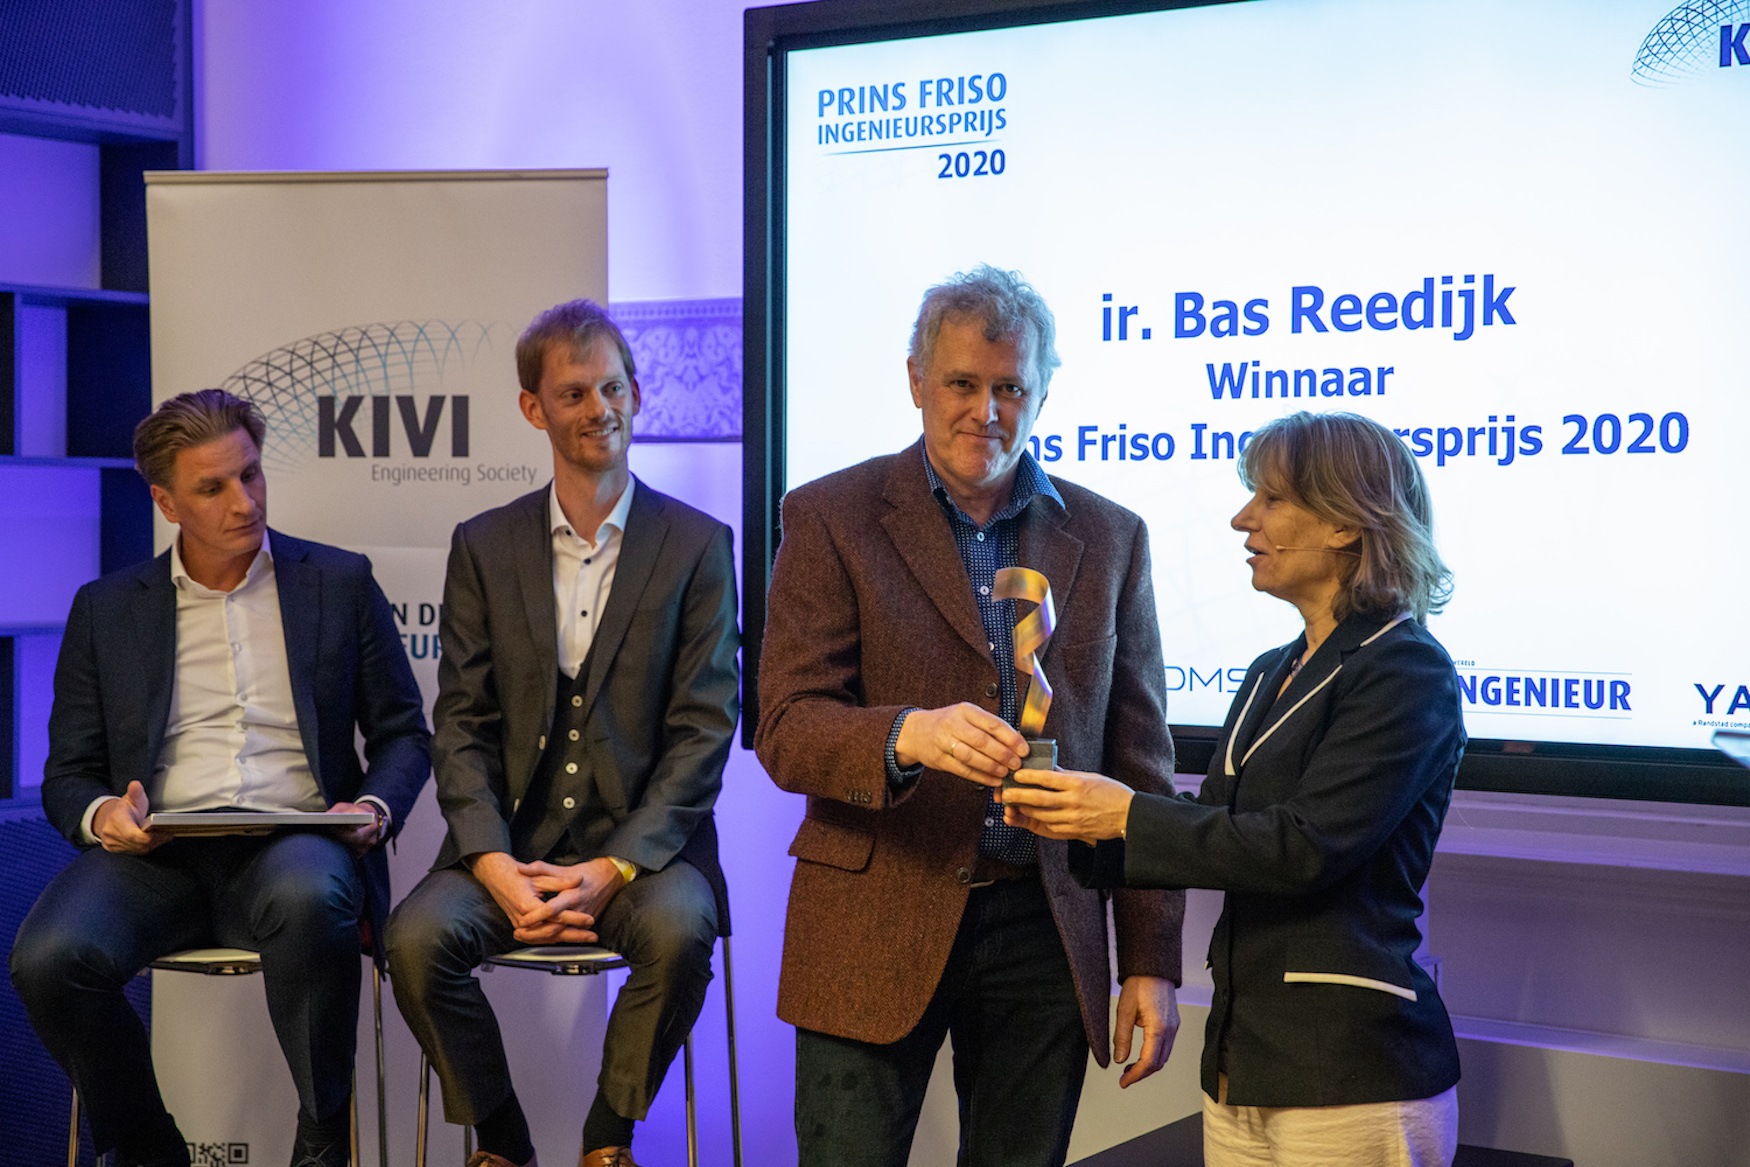 De prijsuitreiking van de Prins Friso Ingenieursprijs, met v.l.n.r. Jelte Kymmell, Erik Duisterwinkel, Bas Reedijk en Joanne Meyboom, president van KIVI. (Foto Kivi / Jordi Huisman)